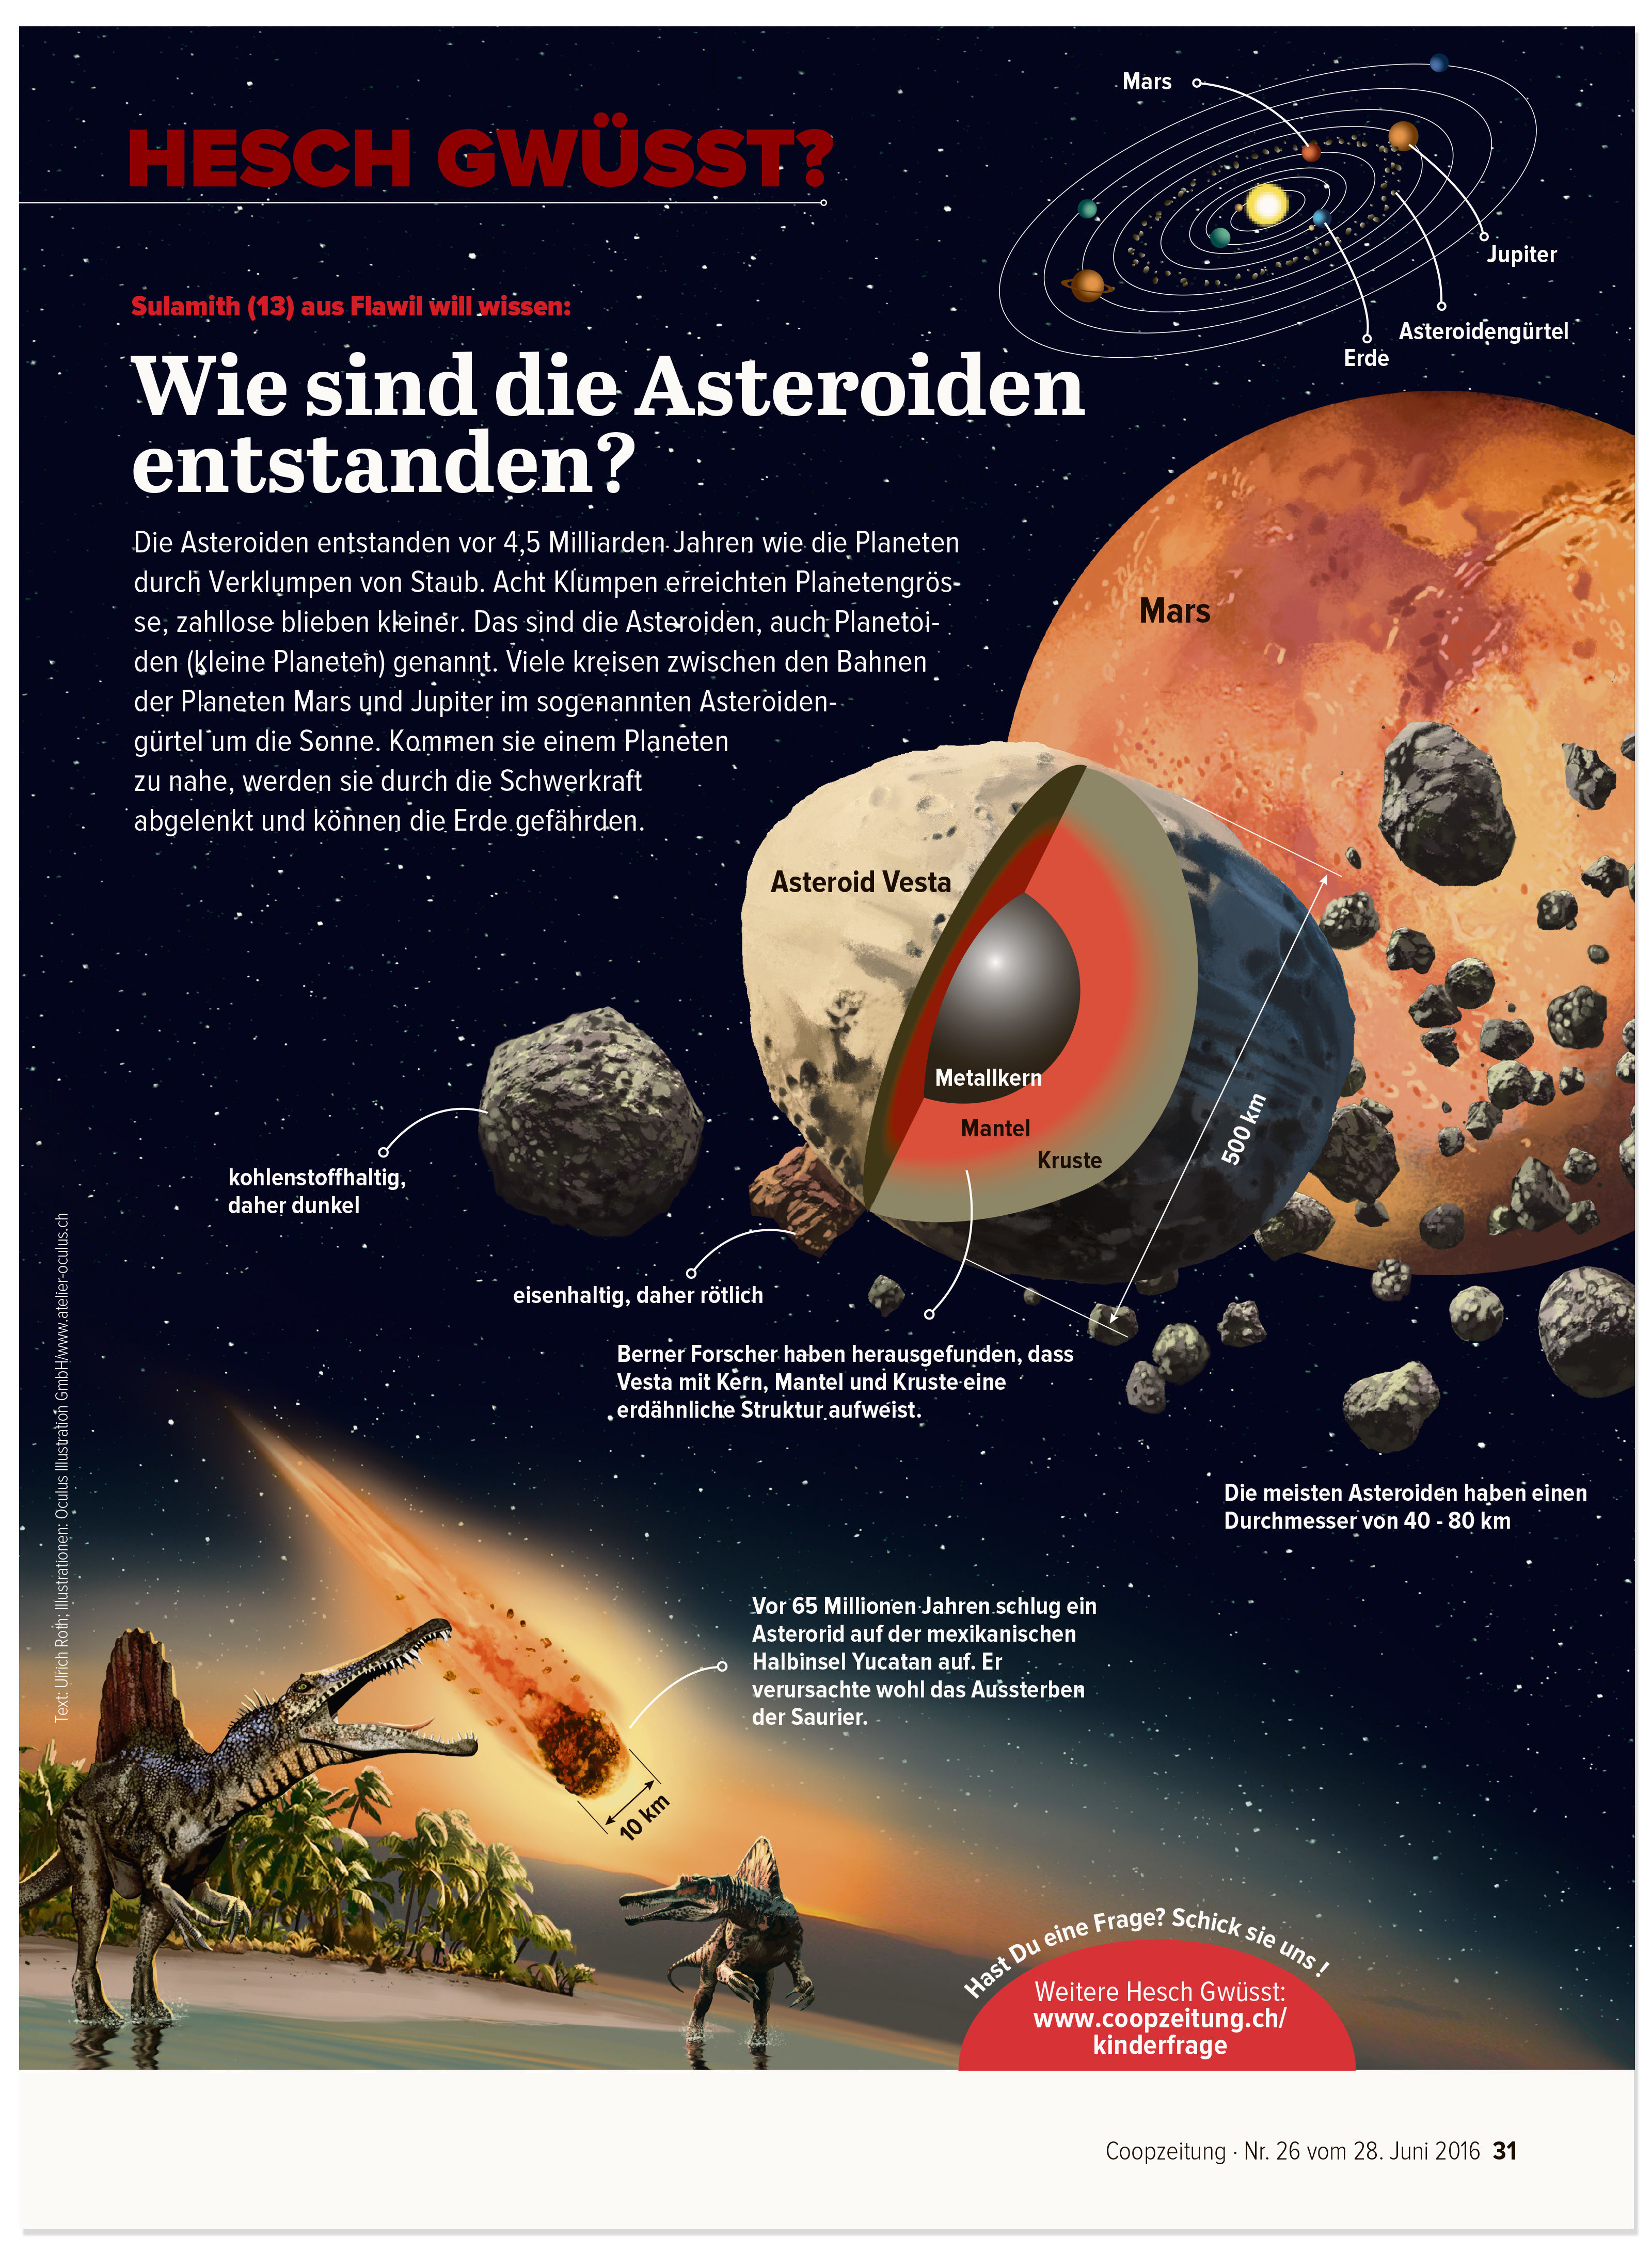 oculus-illustration-coopzeitung-hesch-gwuesst-asteroiden